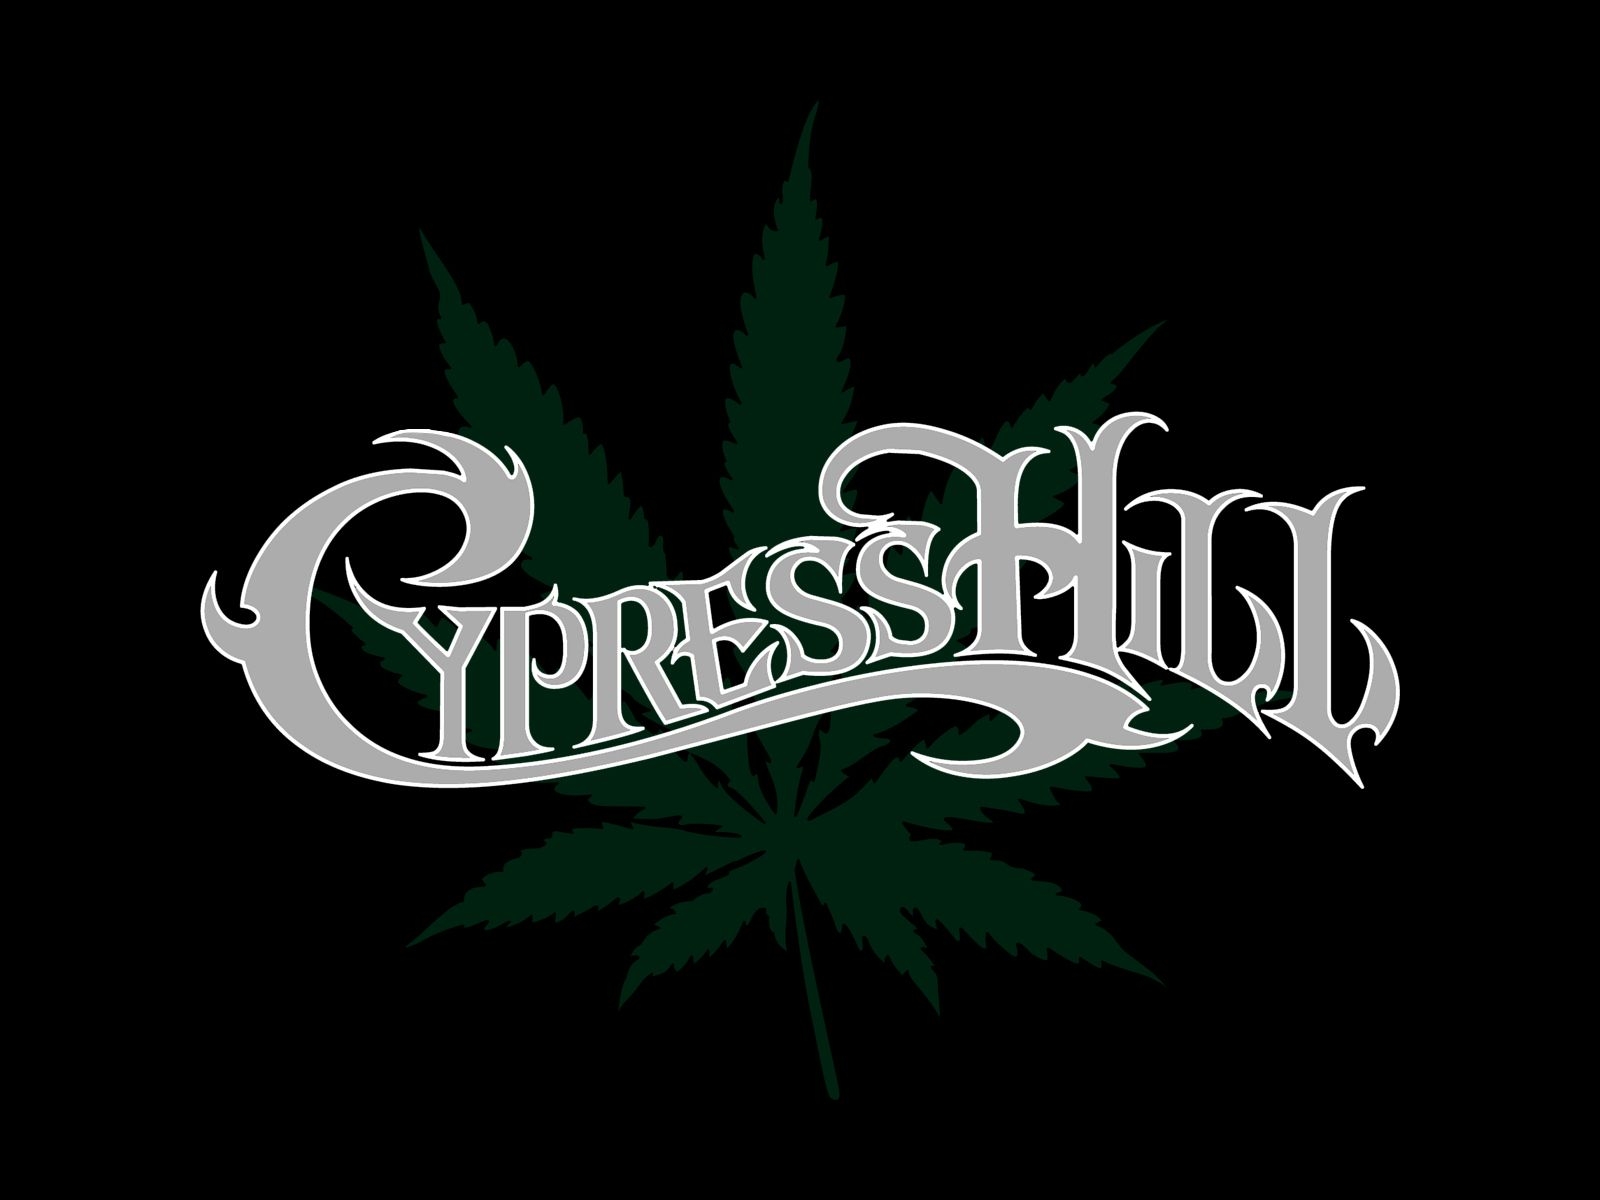 Best Cypress Hill Wallpaper Swamp